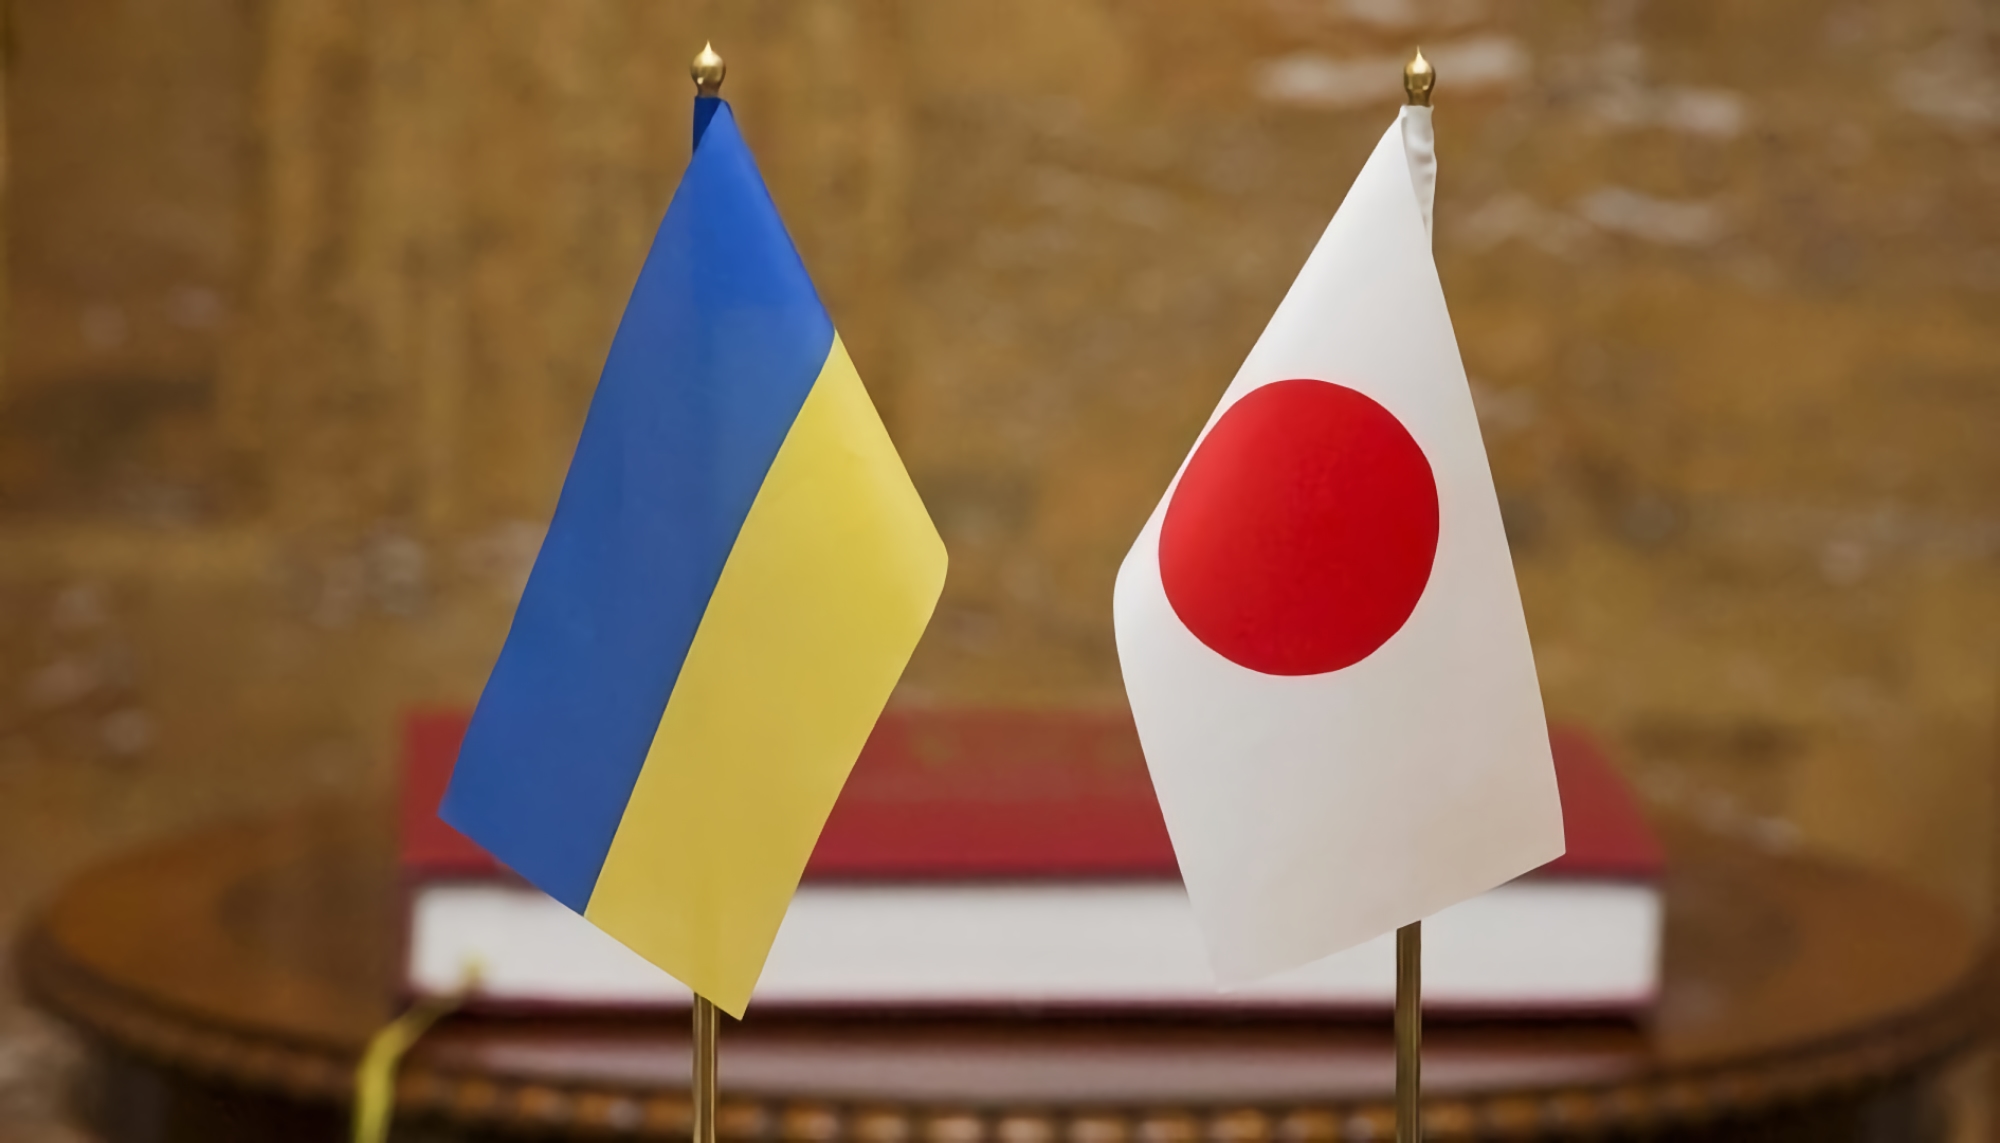 Japonia przygotowuje pakiet pomocowy dla Sił Zbrojnych Ukrainy, w skład którego wejdą ciężarówki i drony